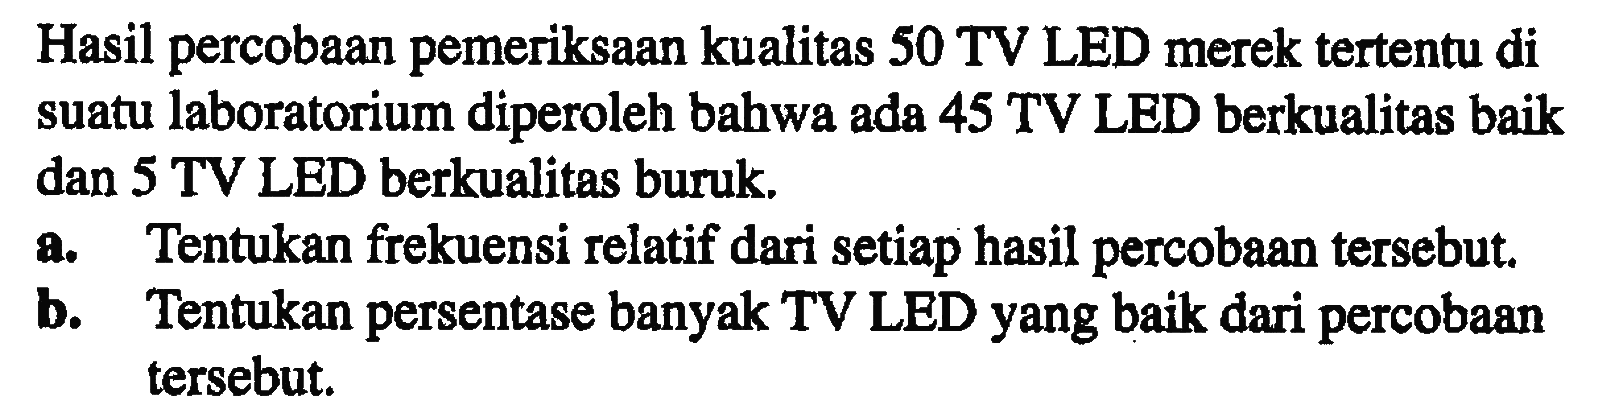 Hasil percobaan pemeriksaan kualitas 50 TV LED merek tertentu di suatu laboratorium diperoleh bahwa ada 45 TV LED berkualitas baik dan 5 TV LED berkualitas buruk. a. Tentukan frekuensi relatif dari setiap hasil percobaan tersebut b. Tentukan persentase banyak TV LED yang baik dari percobaan tersebut.